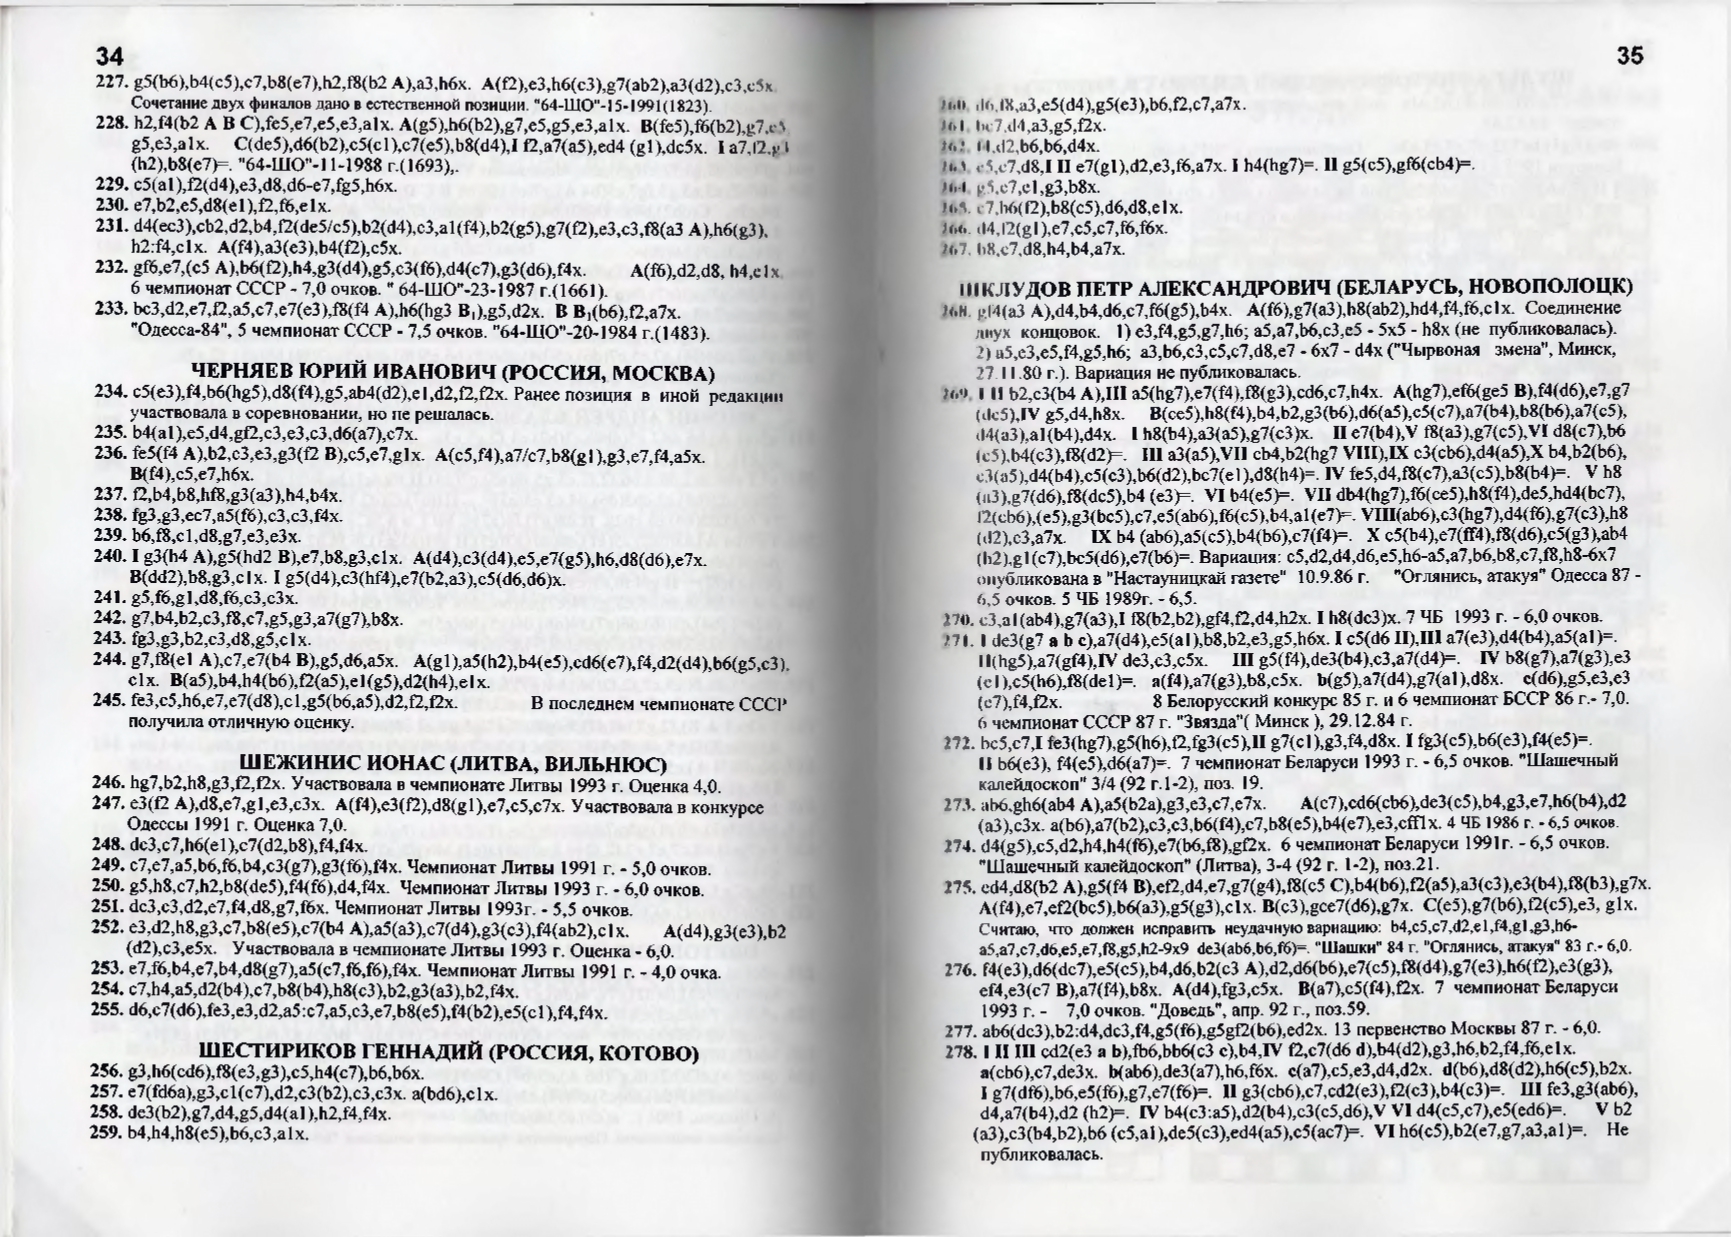 Gorin-Chempionat_mira_po_shashechnoy_kompozitsii_1994-339_page-0019.jpg